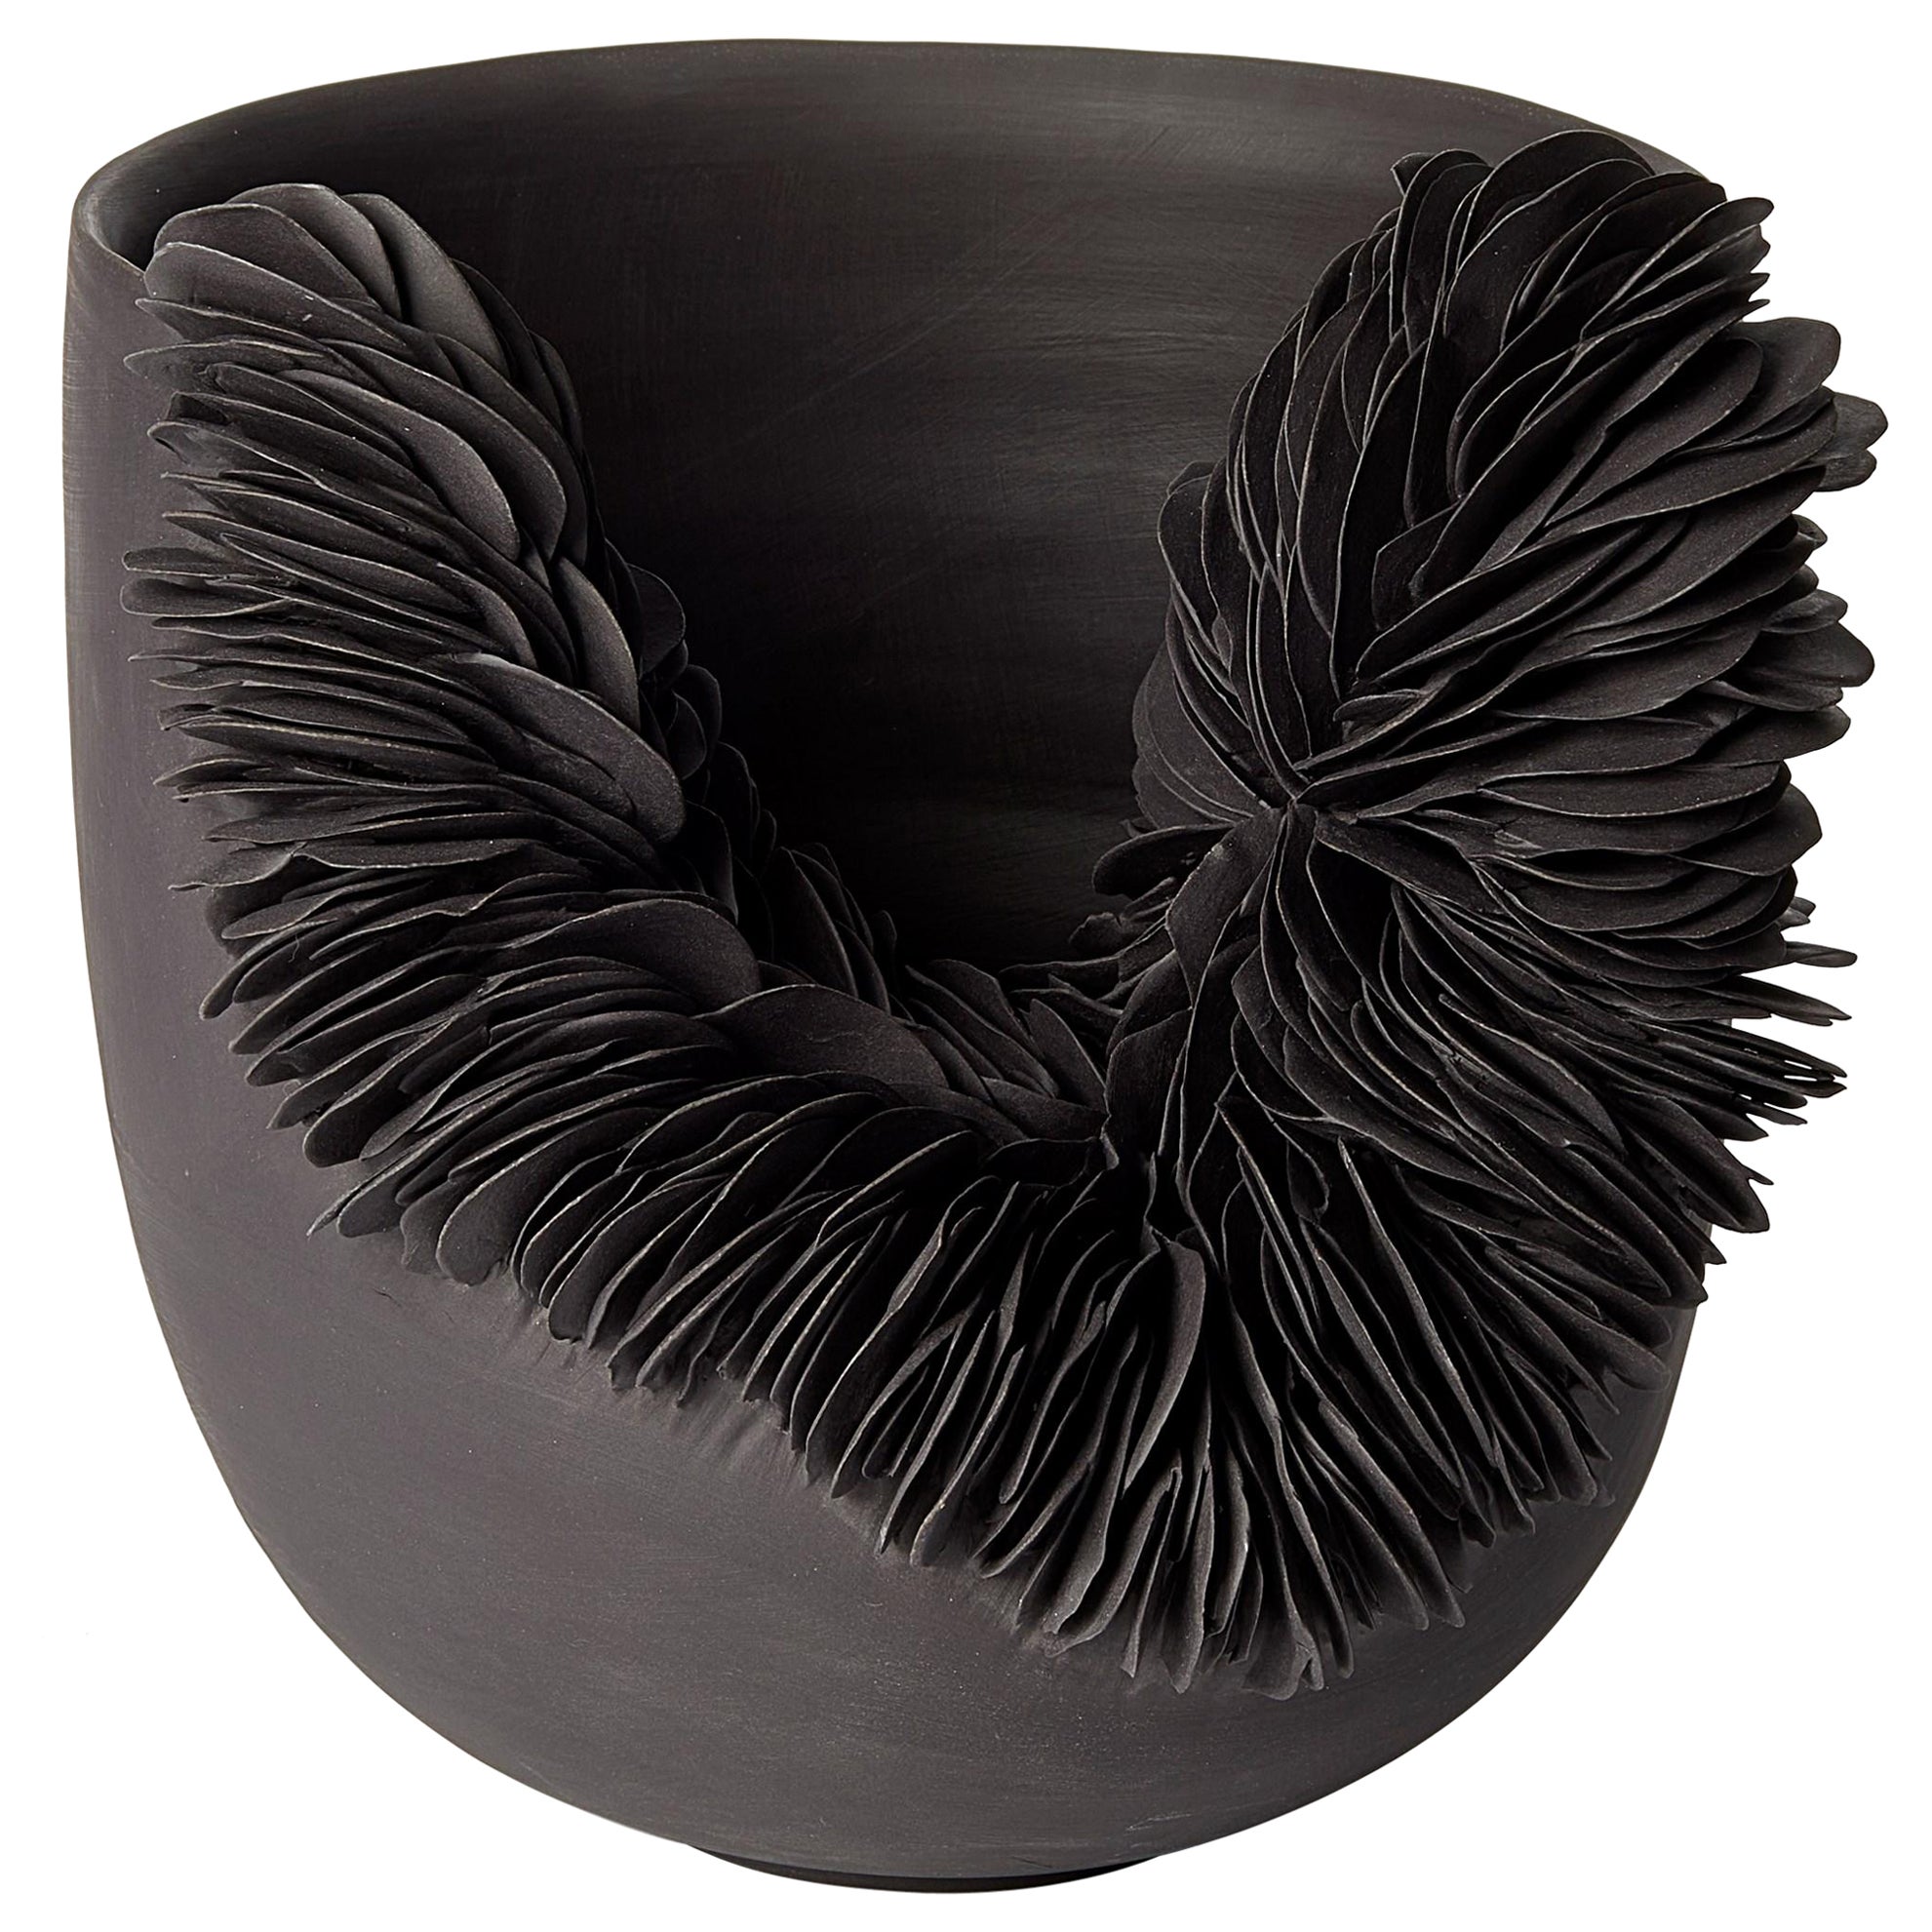 Black Collapsed Bowl, textured porcelain sculptural vessel by Olivia Walker